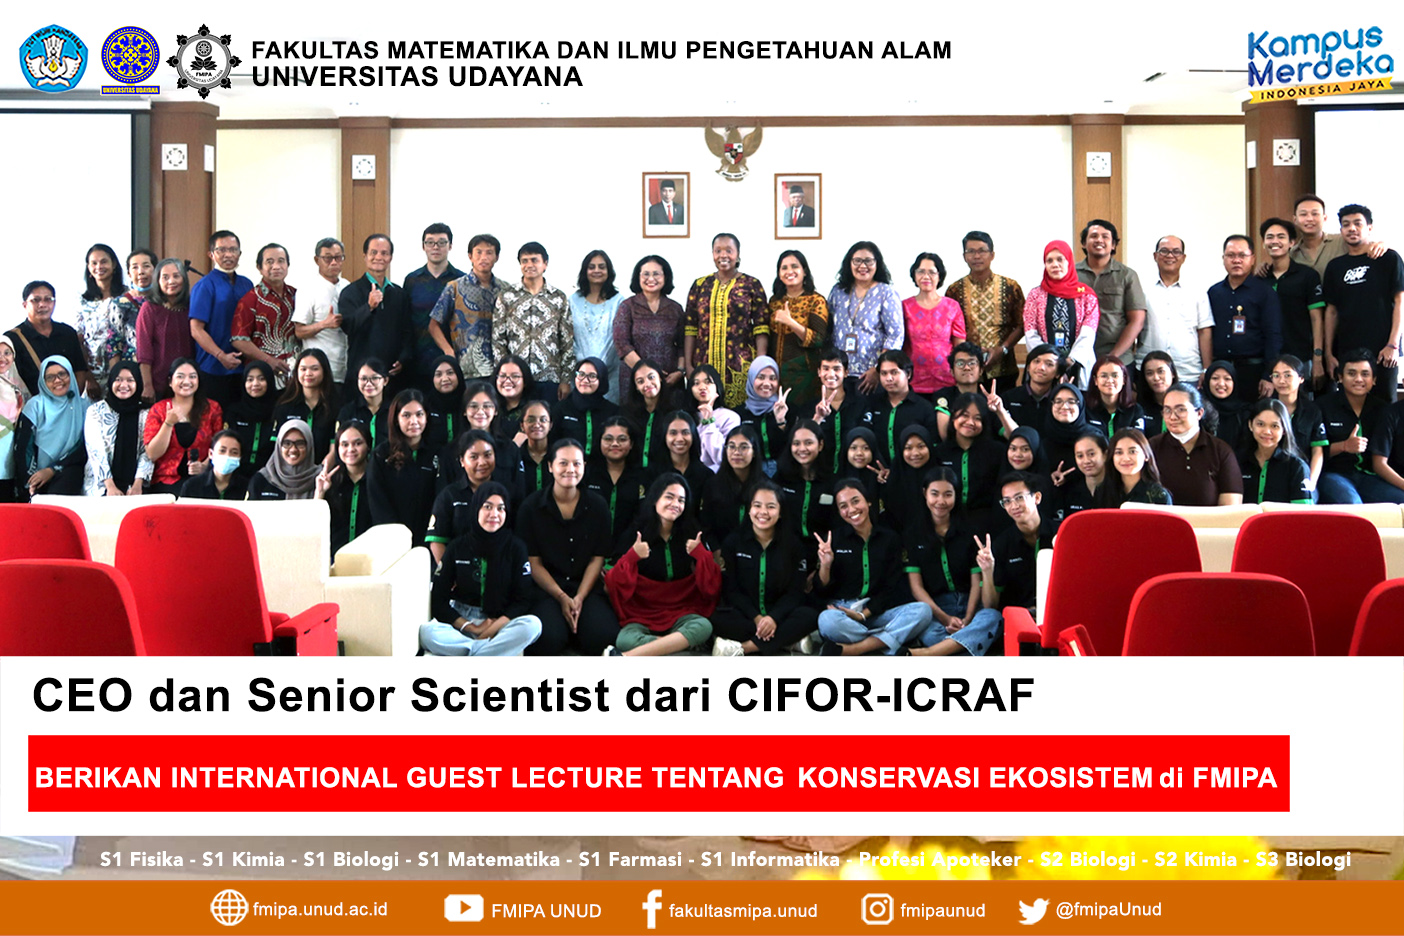 CEO dan Senior Scientist dari CIFOR-ICRAF berikan Kuliah Tamu Internasional tentang konservasi ekosistem di FMIPA